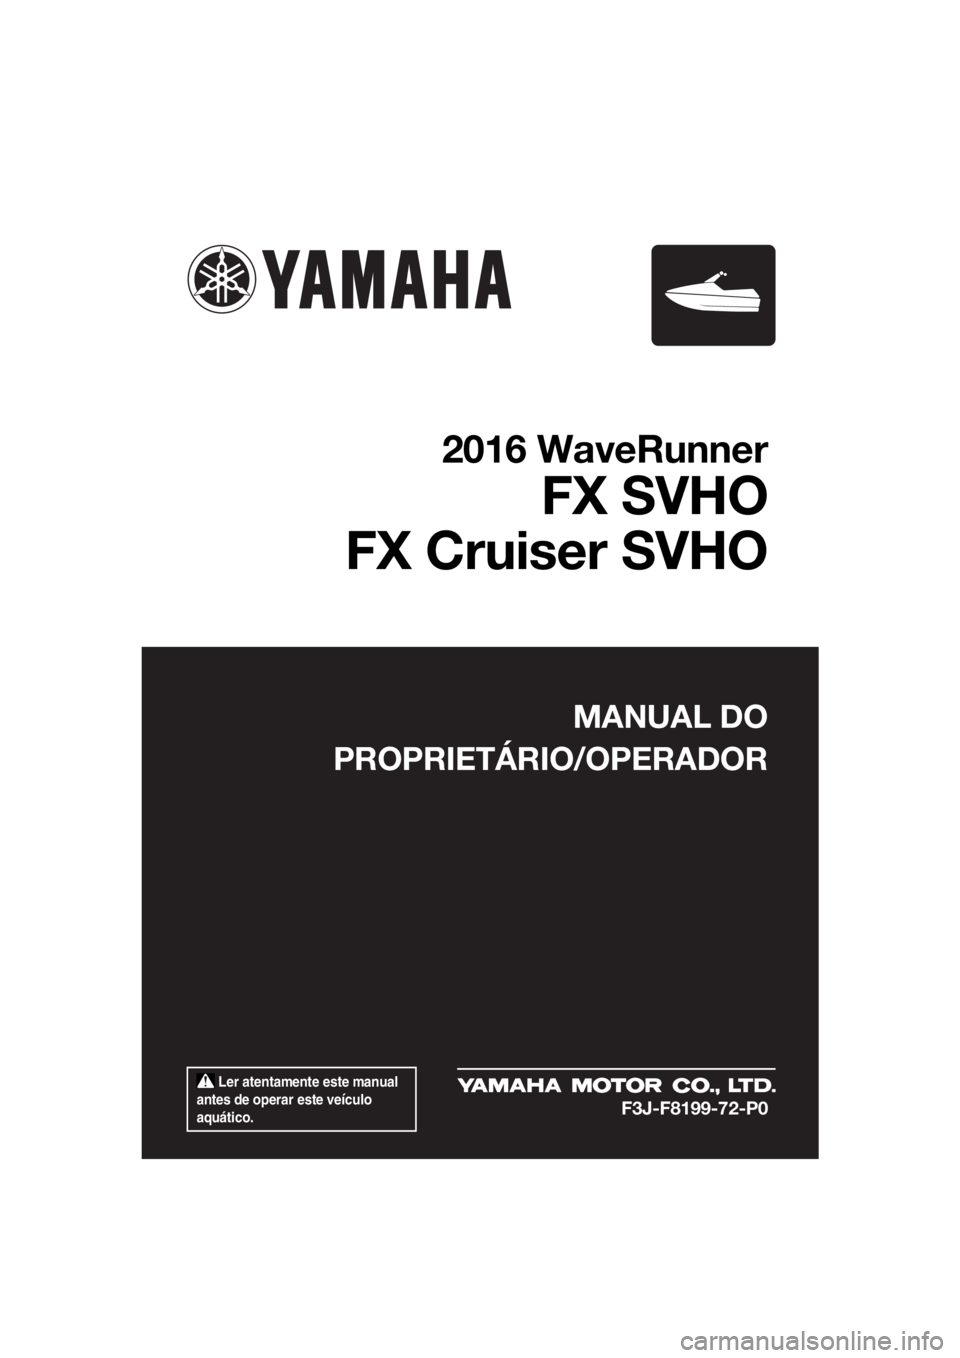 YAMAHA FX SVHO 2016  Manual de utilização (in Portuguese)  Ler atentamente este manual 
antes de operar este veículo 
aquático.
MANUAL DO
PROPRIETÁRIO/OPERADOR
2016 WaveRunner
FX SVHO
FX Cruiser SVHO
F3J-F8199-72-P0
UF3J72P0.book  Page 1  Friday, May 8, 2